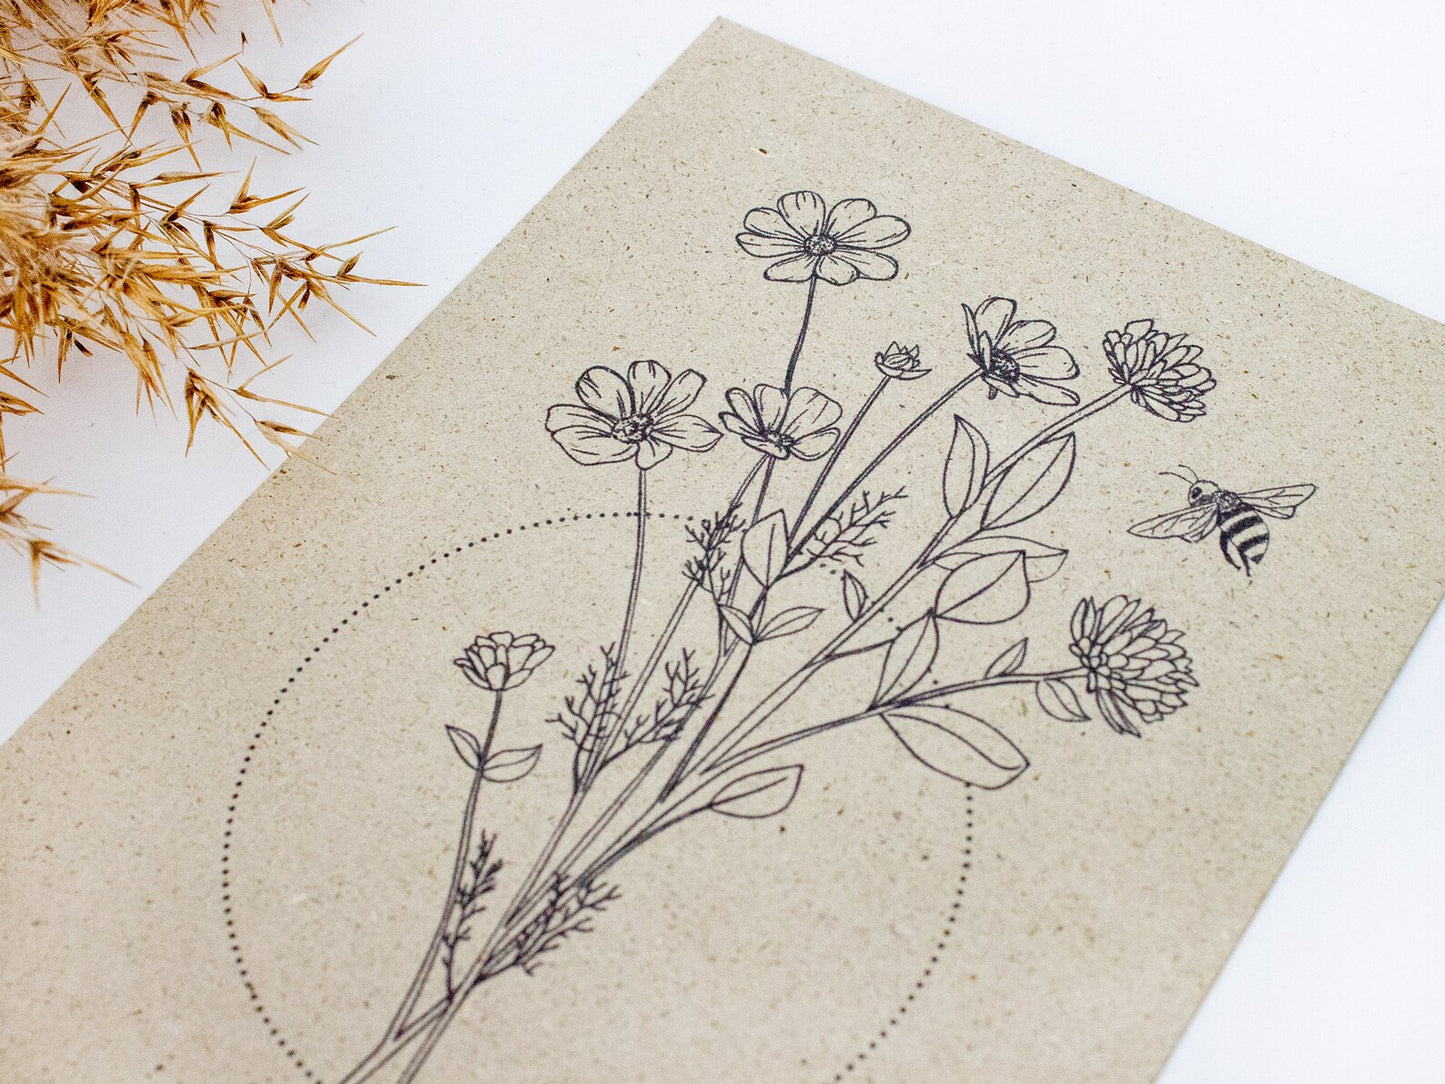 Graspapier Postkarten 'Blume' & 'Zitrone'